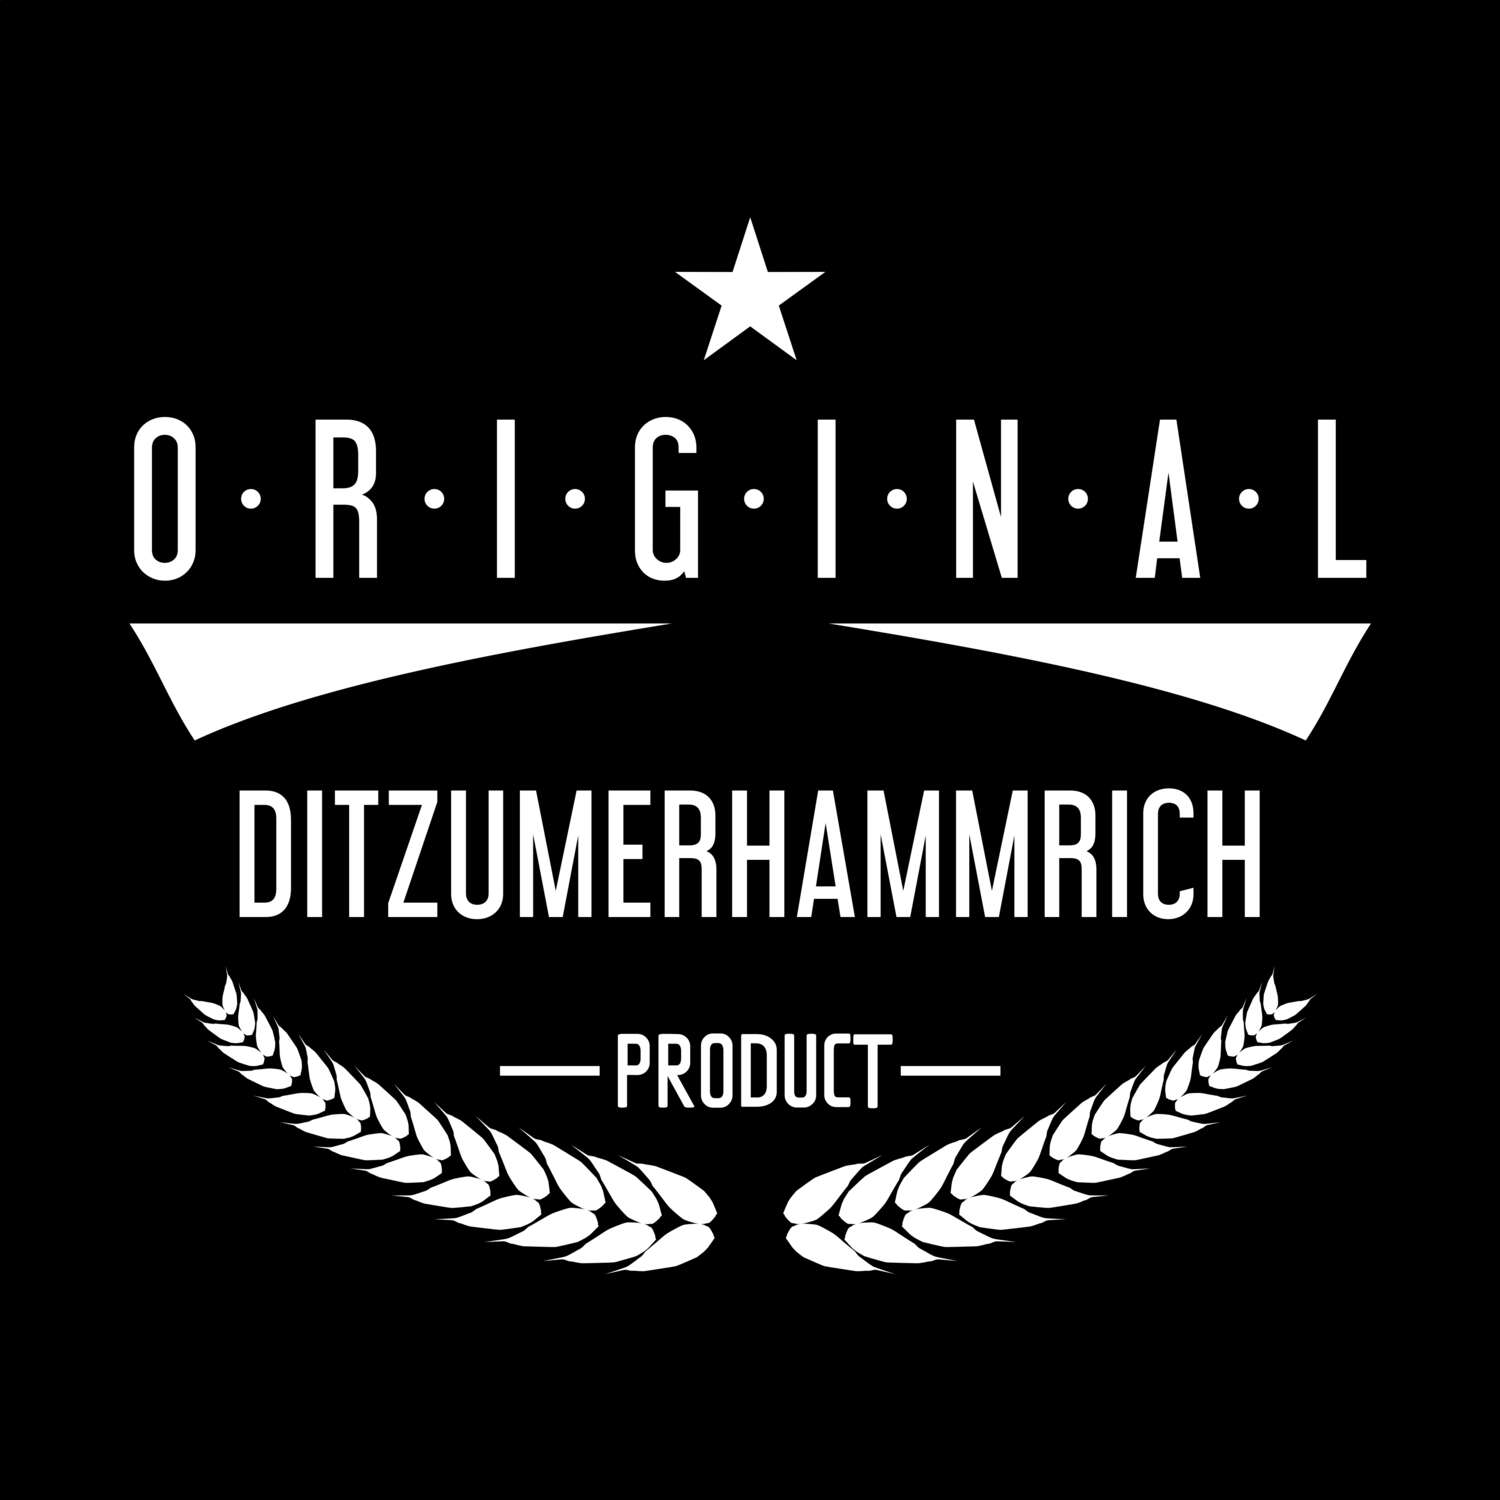 Ditzumerhammrich T-Shirt »Original Product«